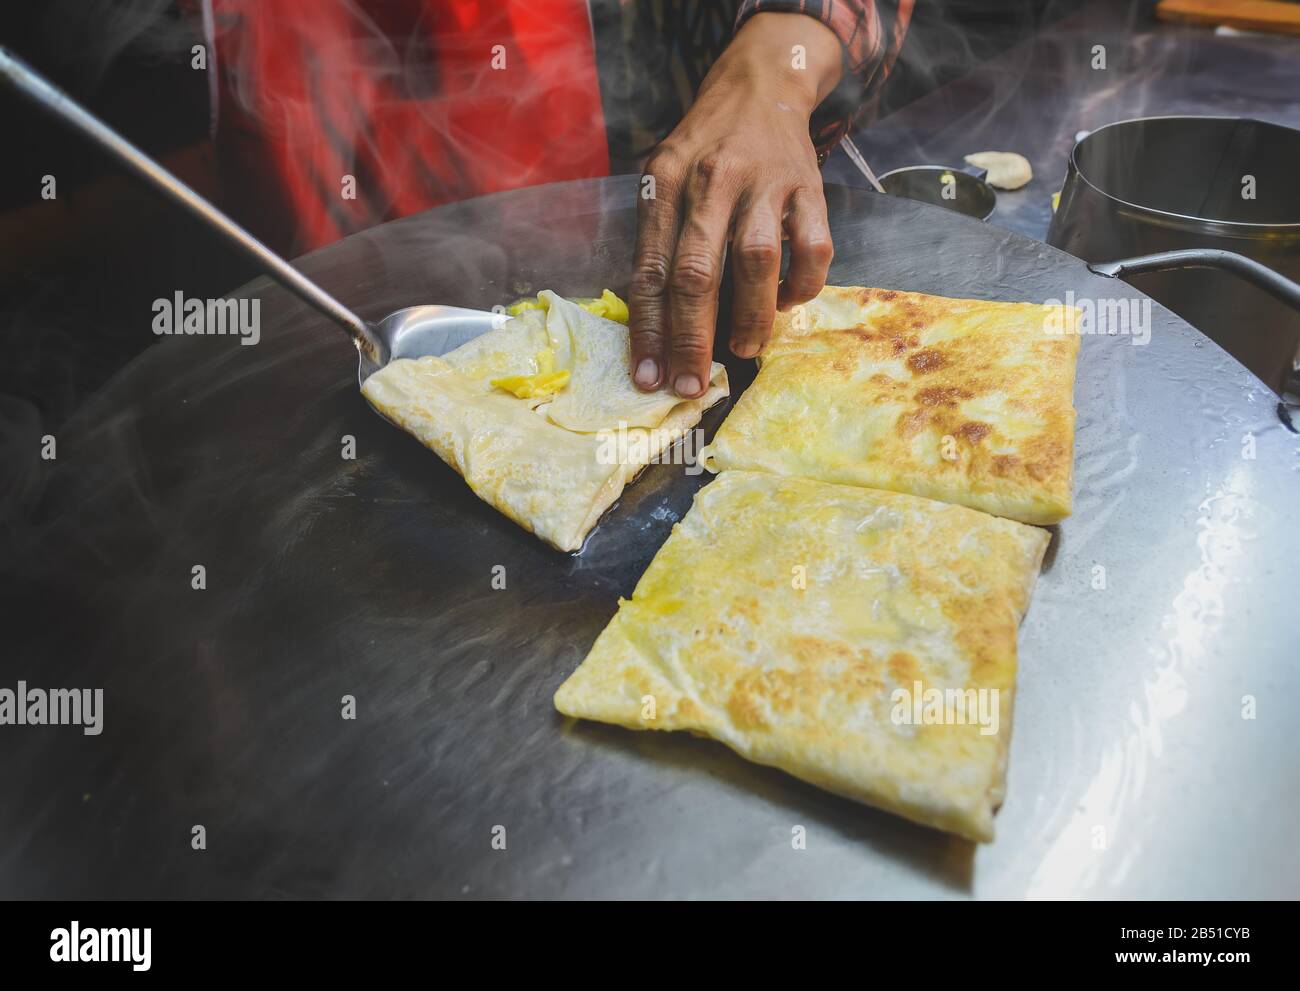 Indische Straßennahrung roti süßer Snack auf dem eisernen Teller mit Nachtbeleuchtung. Stockfoto